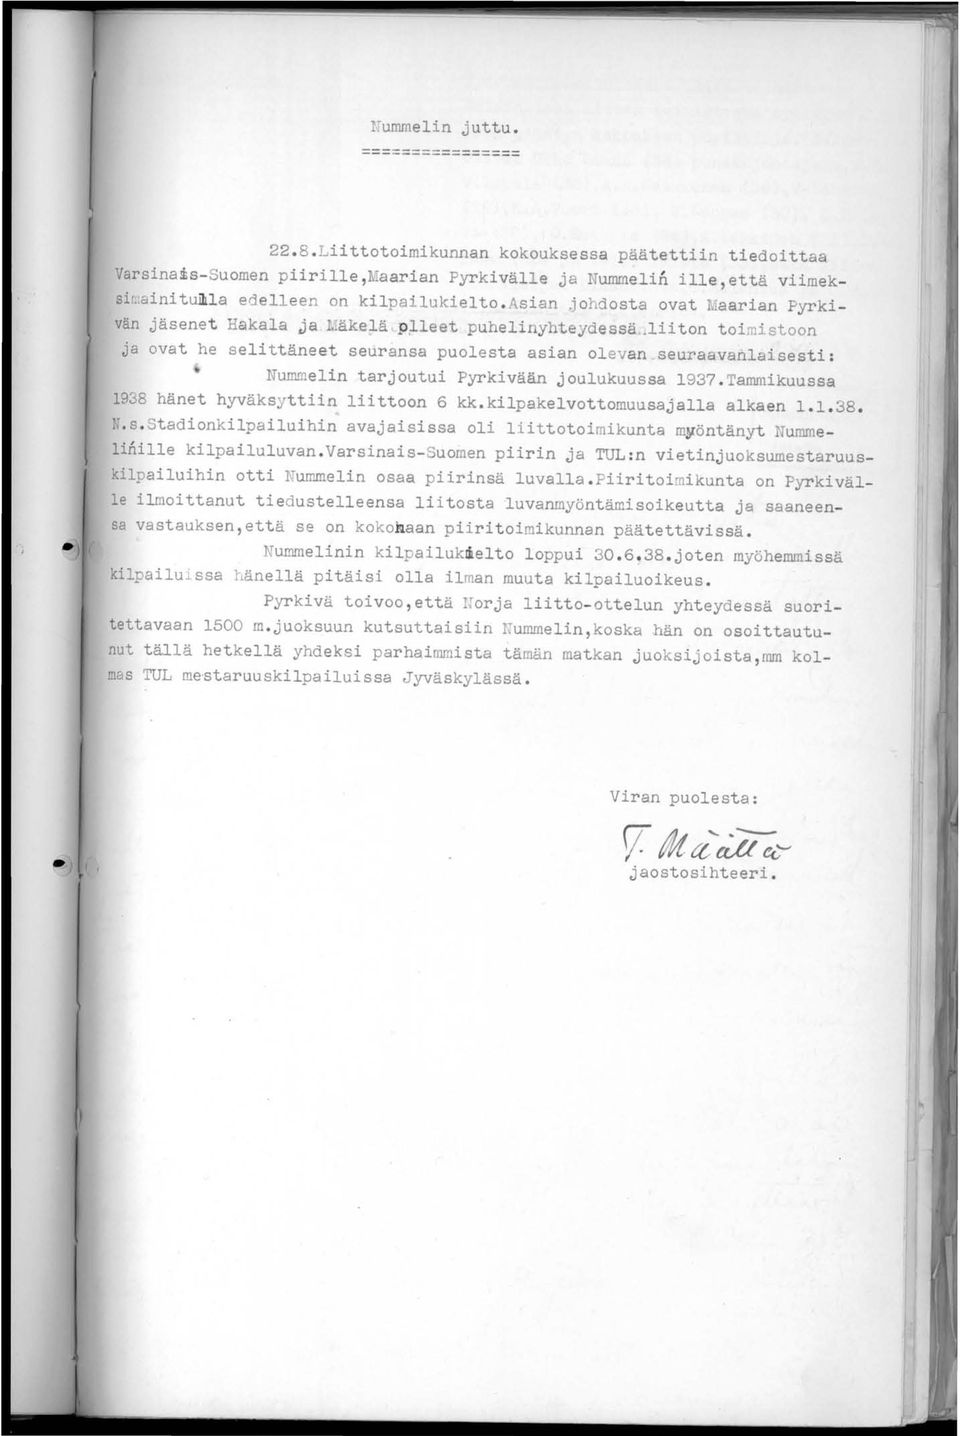 lii ton toimi stoon j a ovat he selittäneet seuransa puolesta asian olevan _seuraavanlaisesti : Nummelin tarjoutui Pyrkivään joulukuussa 193?Tammikuussa 1938 hänet hyväksyttiin liittoon 6 kk.